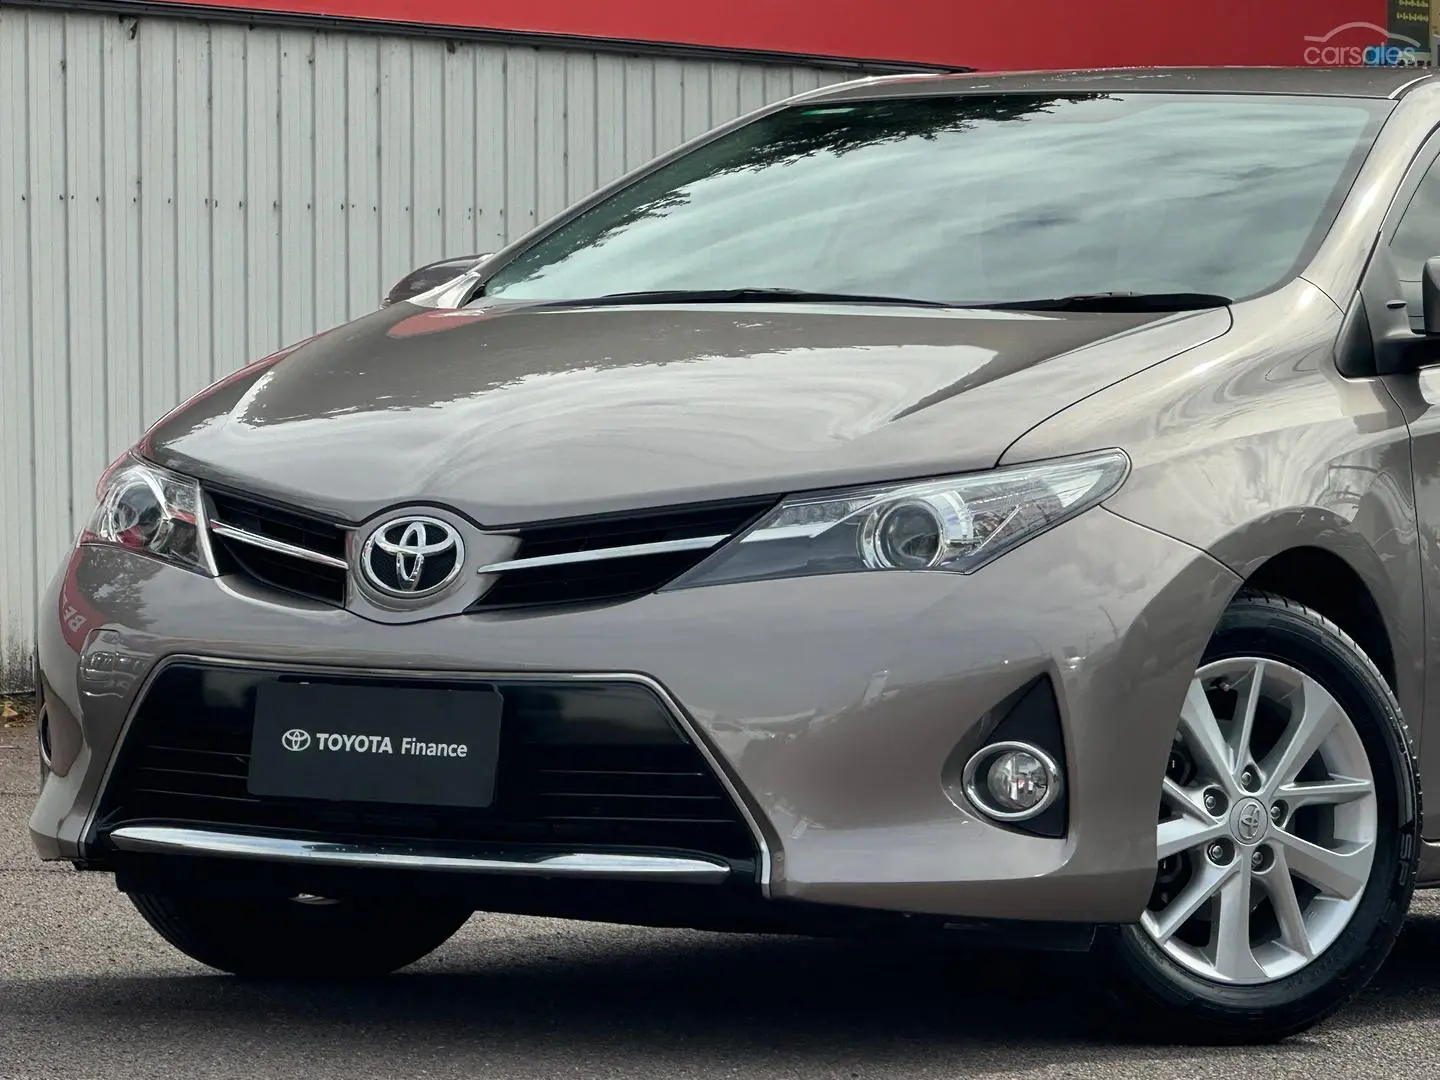 2014 Toyota Corolla Image 11